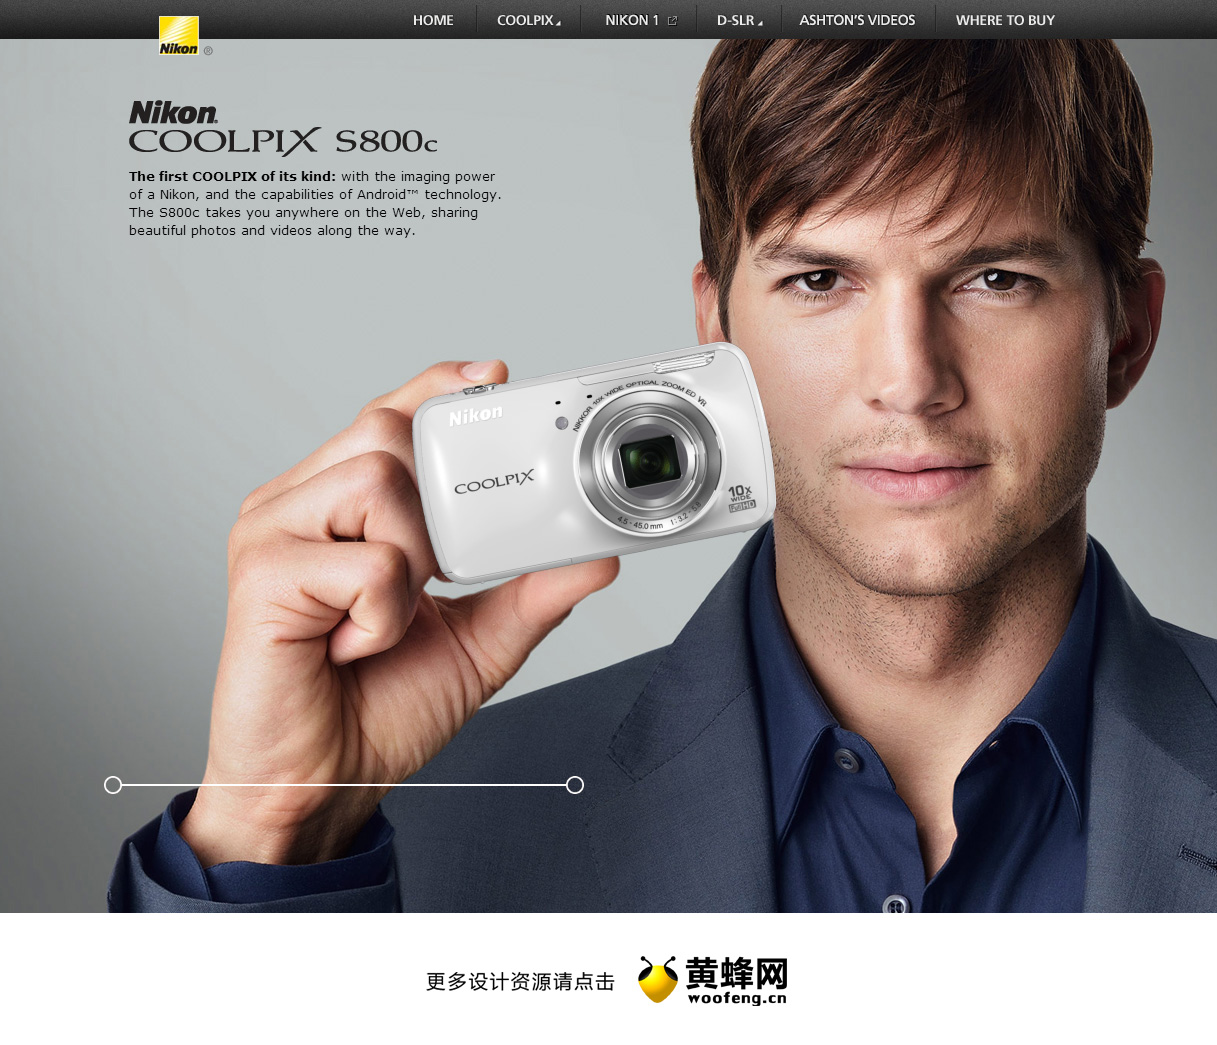 尼康COOLPIX S800c相机数码网站，来源自黄蜂网https://woofeng.cn/